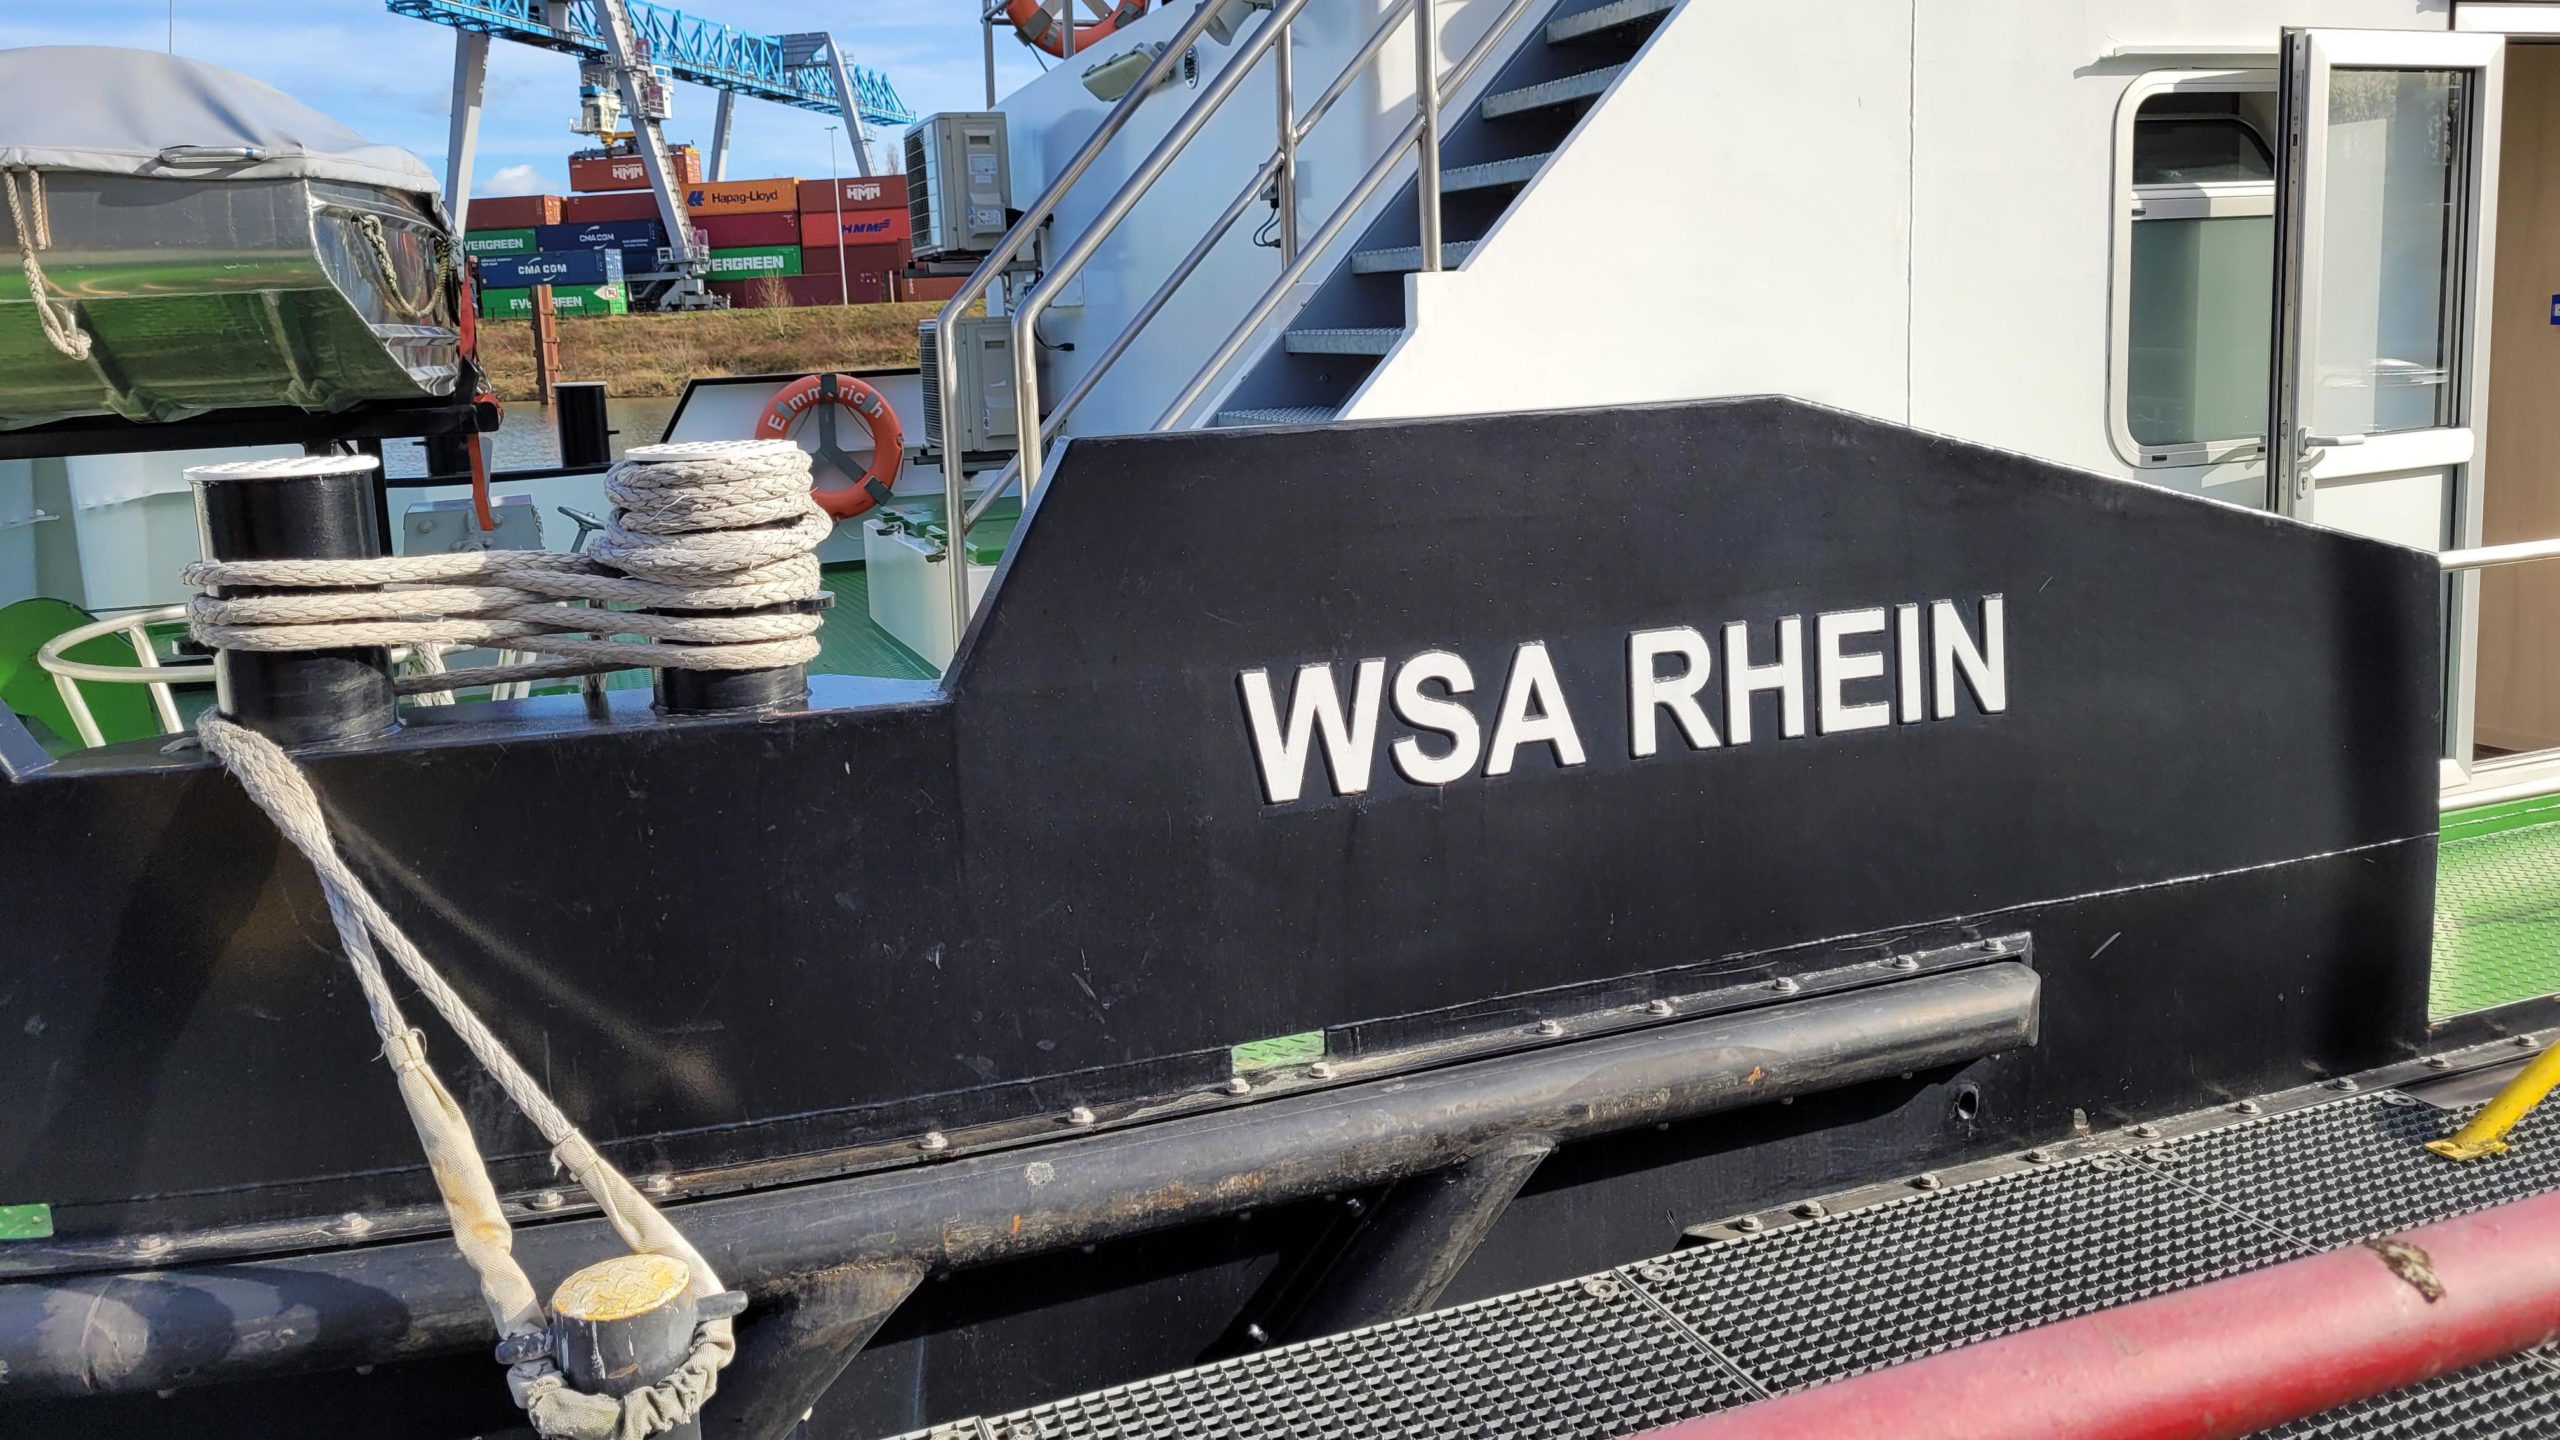 RWB Essen - Schülerpraktikum als Binnenschiffer bei der WSA in Emmerich